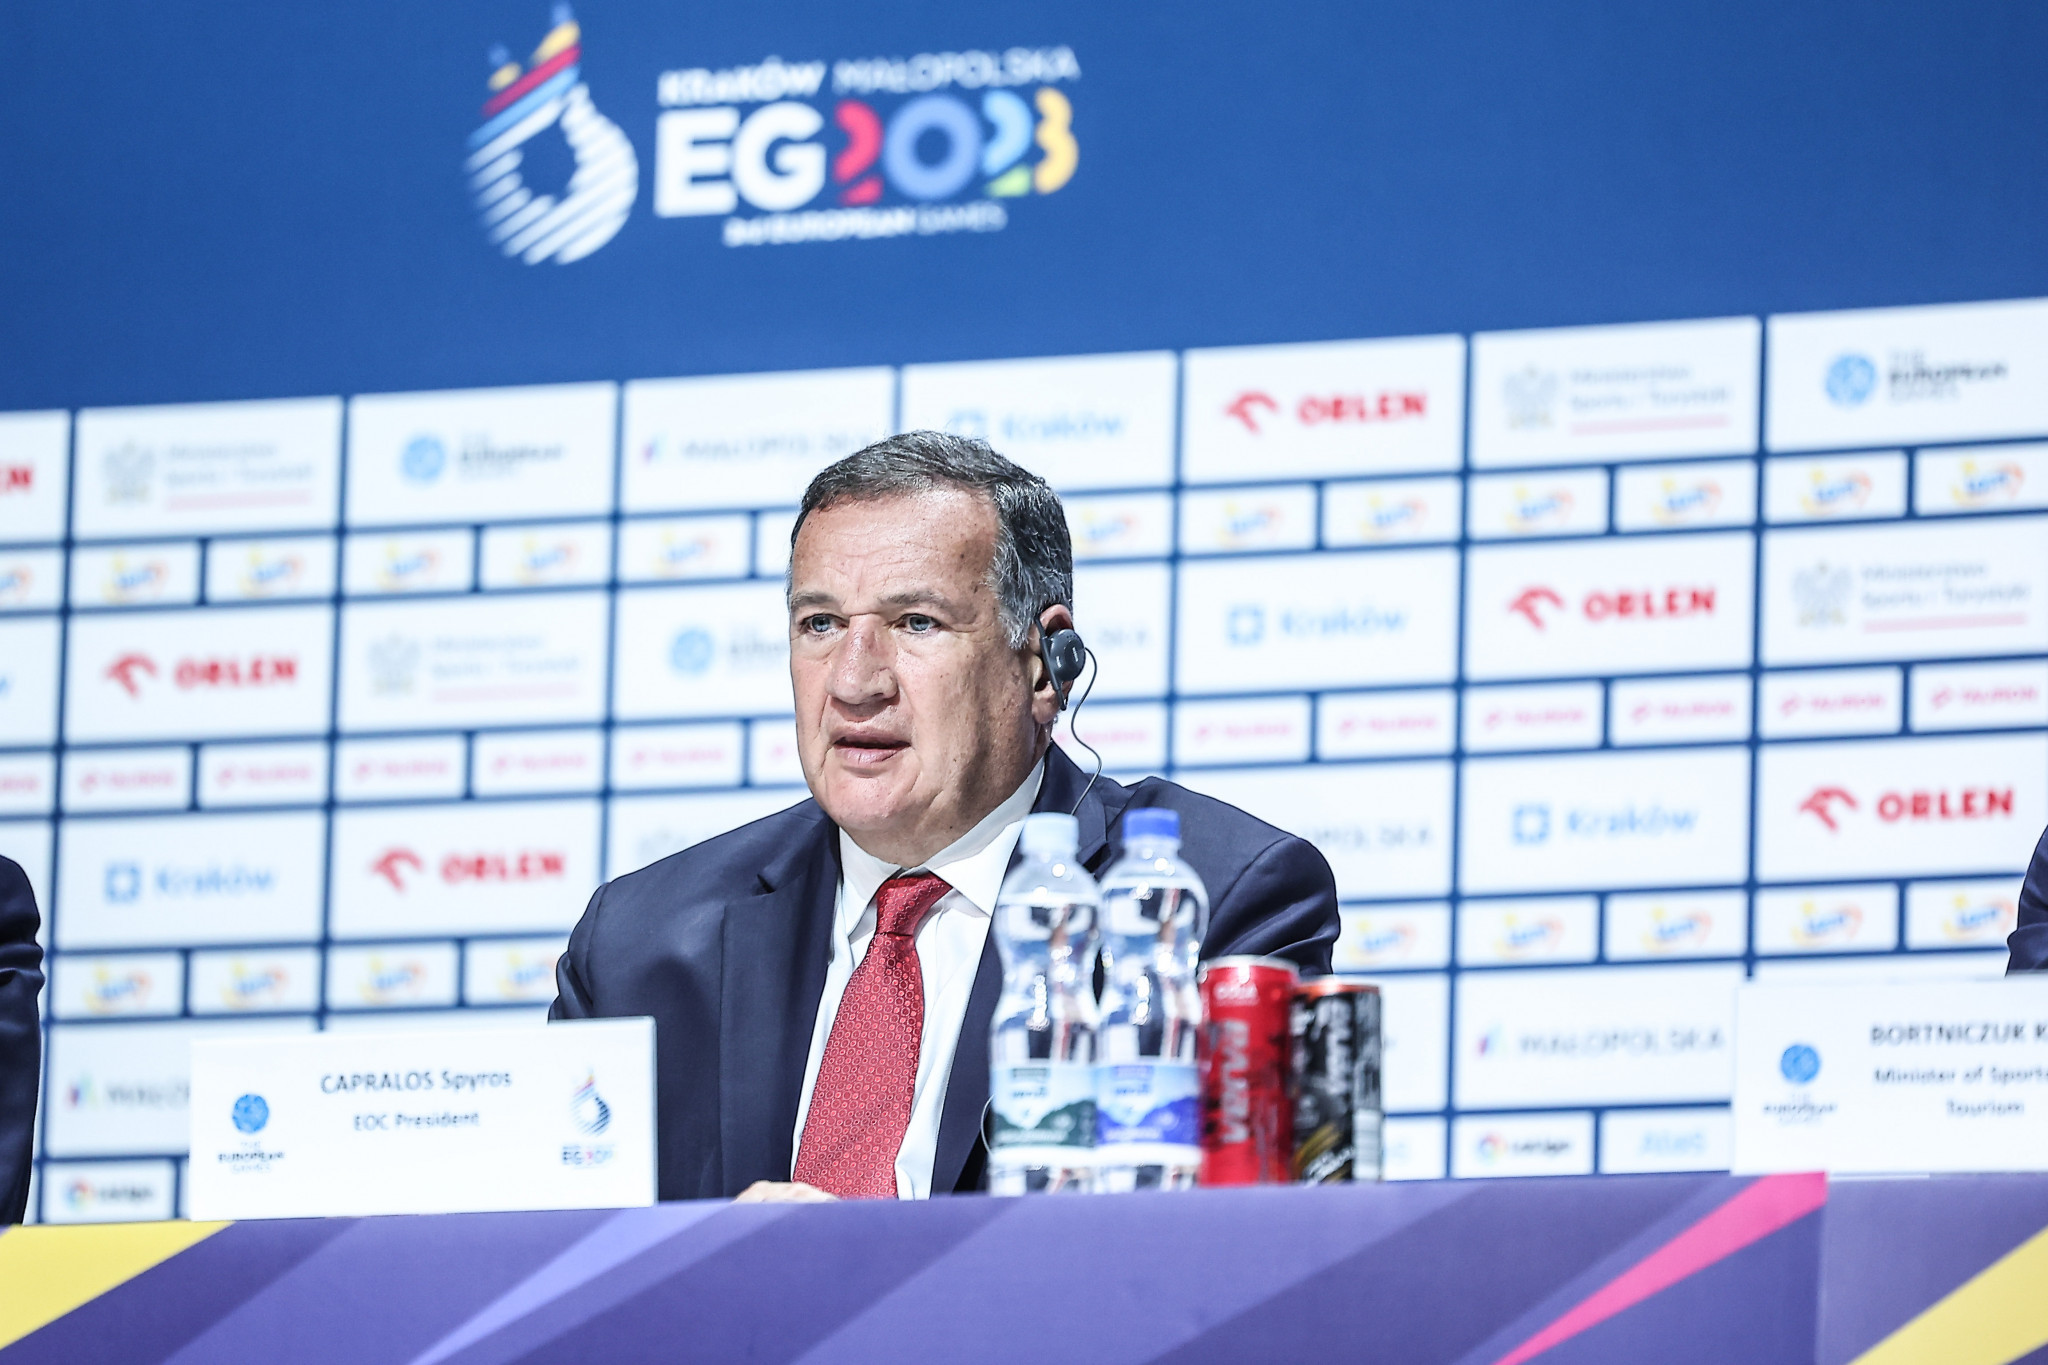 Capralos mówi „właściwa decyzja” w sprawie Rosji na europejskich igrzyskach „niezwykły sukces”